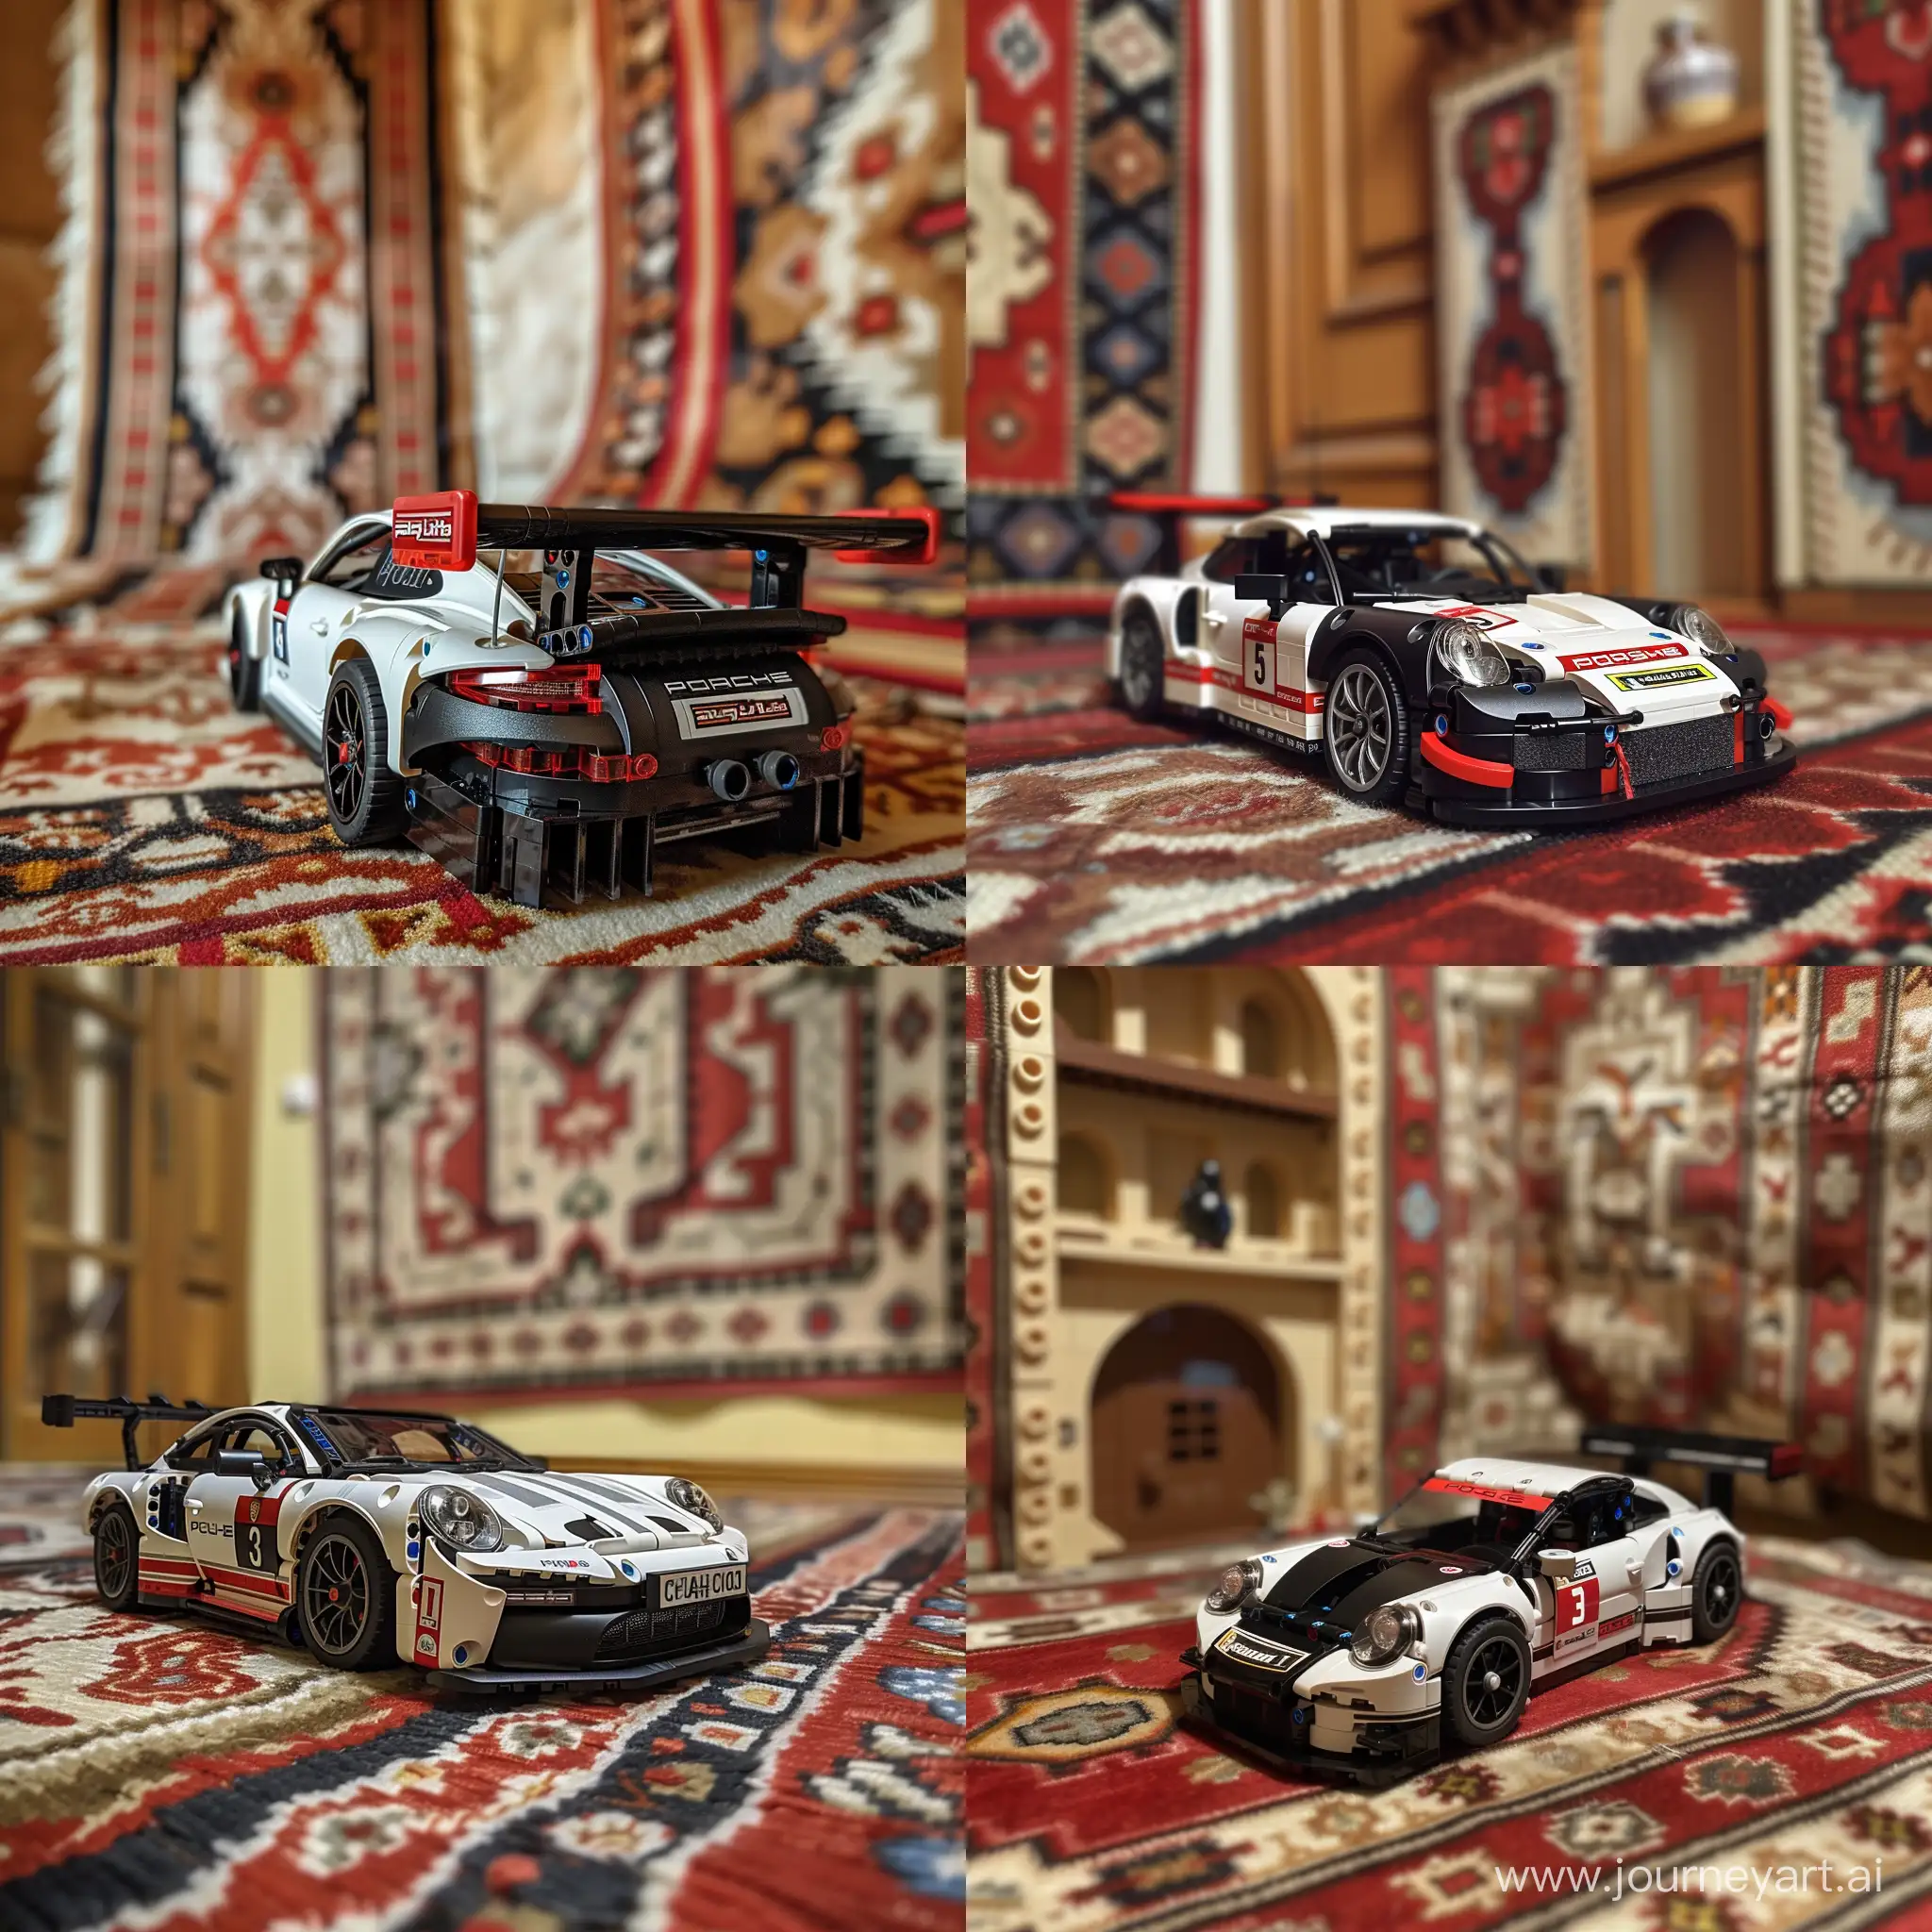 Realistic-Lego-Porsche-911-RSR-in-Vintage-Kazakh-Interior